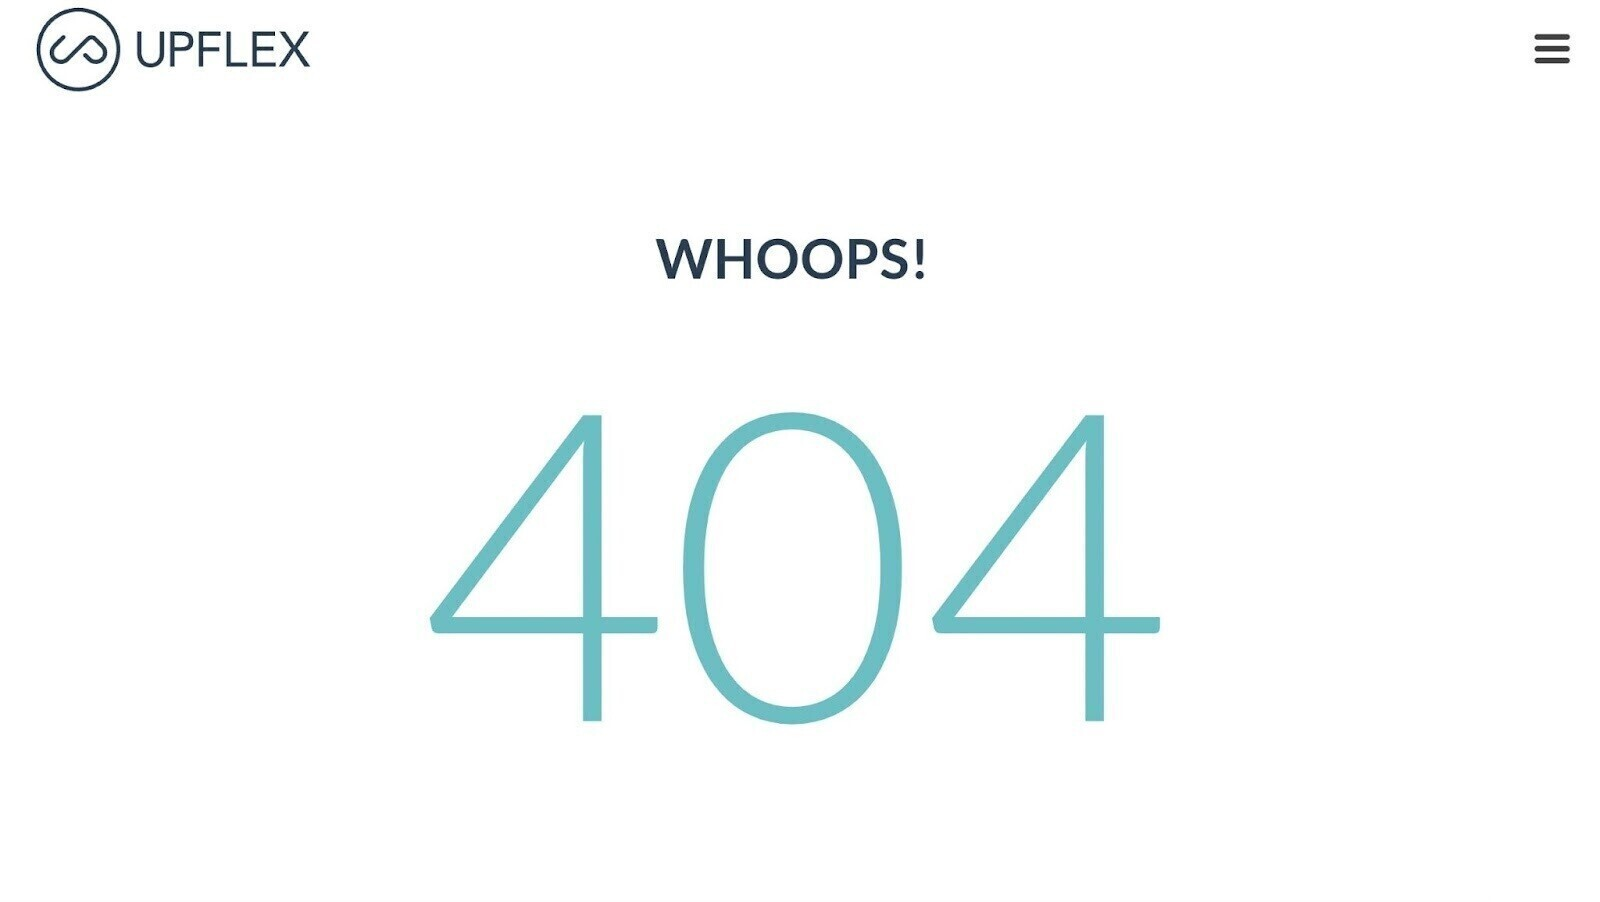 404 error page from Upflex